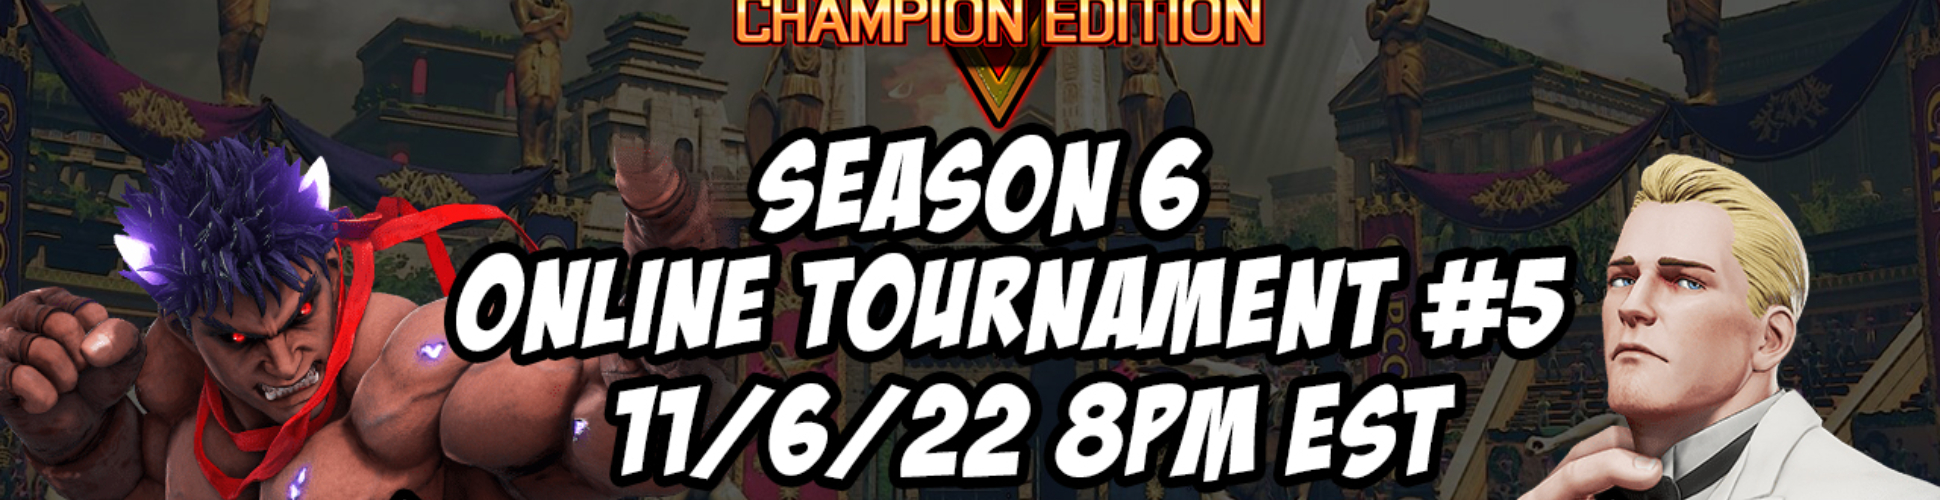 SFV CE Season 6 Online Tournament #5 11/6/22 8pm EST